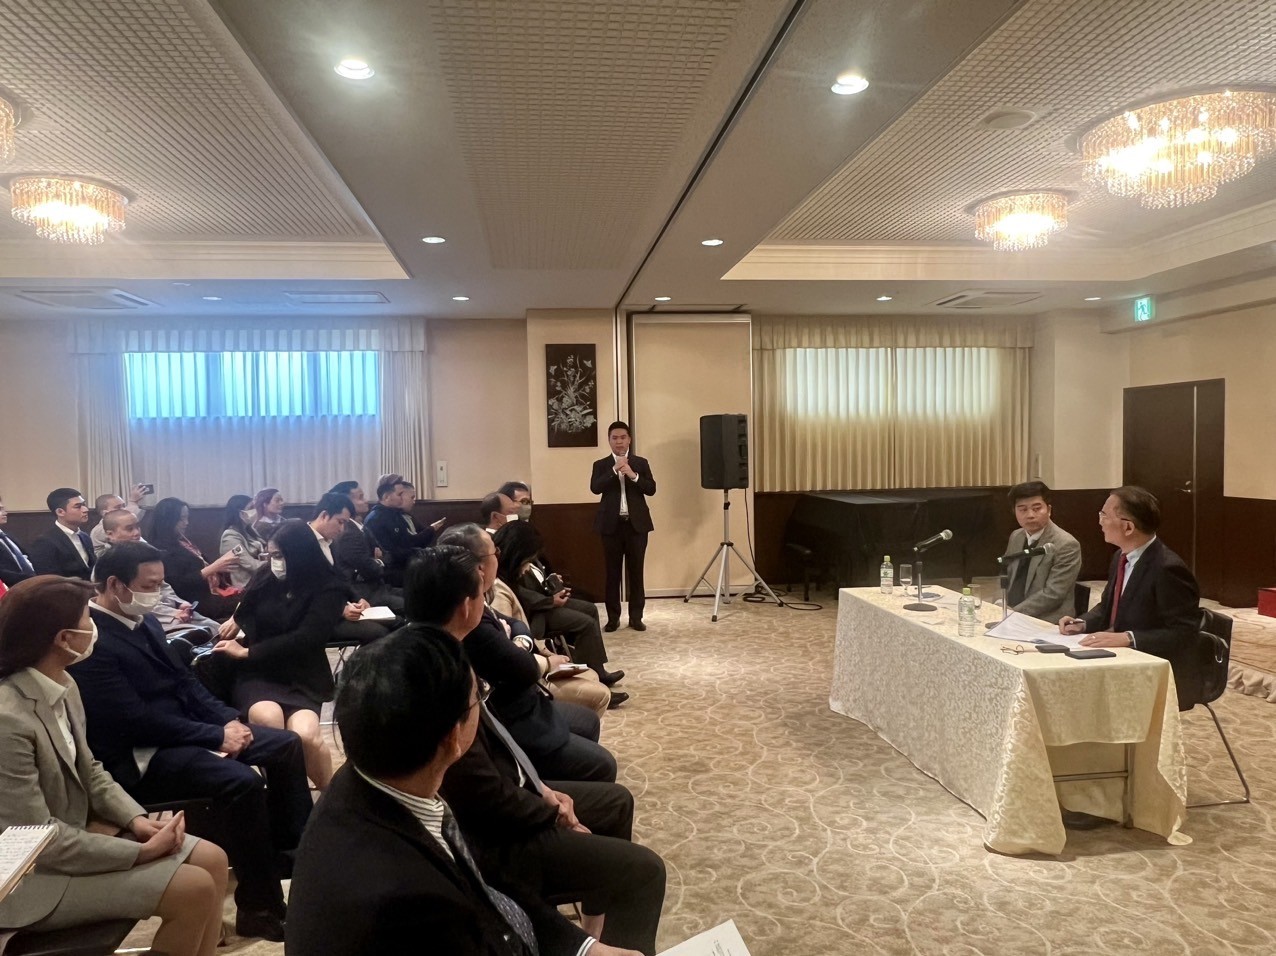 Đoàn Ủy ban Nhà nước về người Việt Nam ở nước ngoài gặp gỡ đại diện các Hội, đoàn người Việt tại Nhật Bản